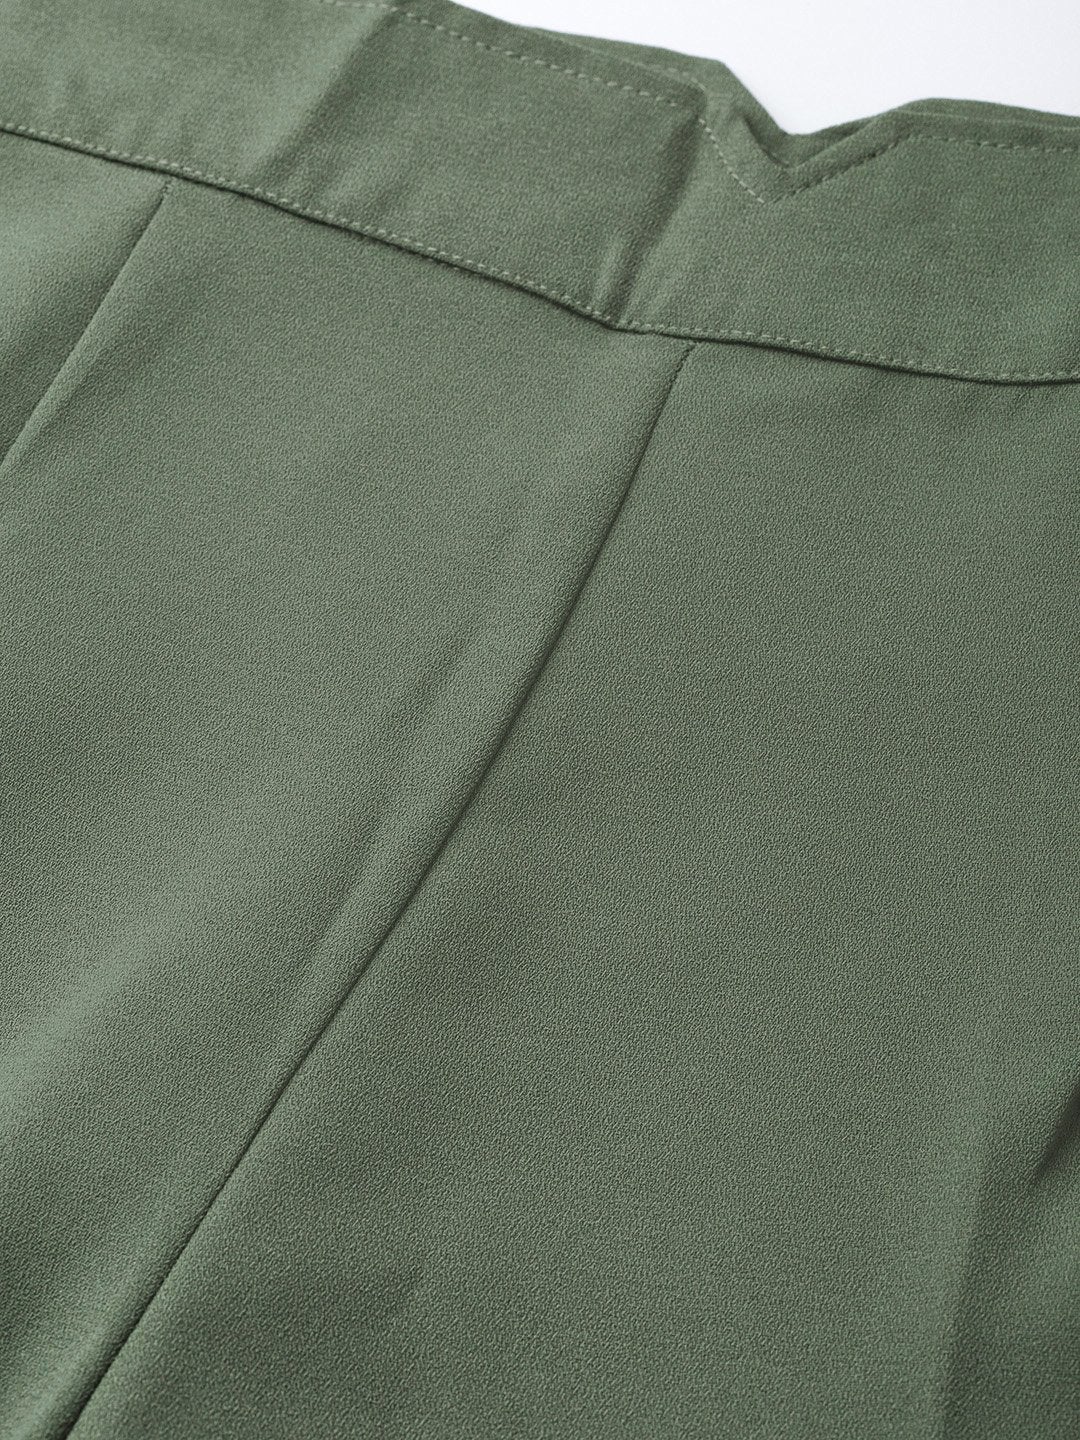 Women's Olive Side Zipper Pant - SASSAFRAS